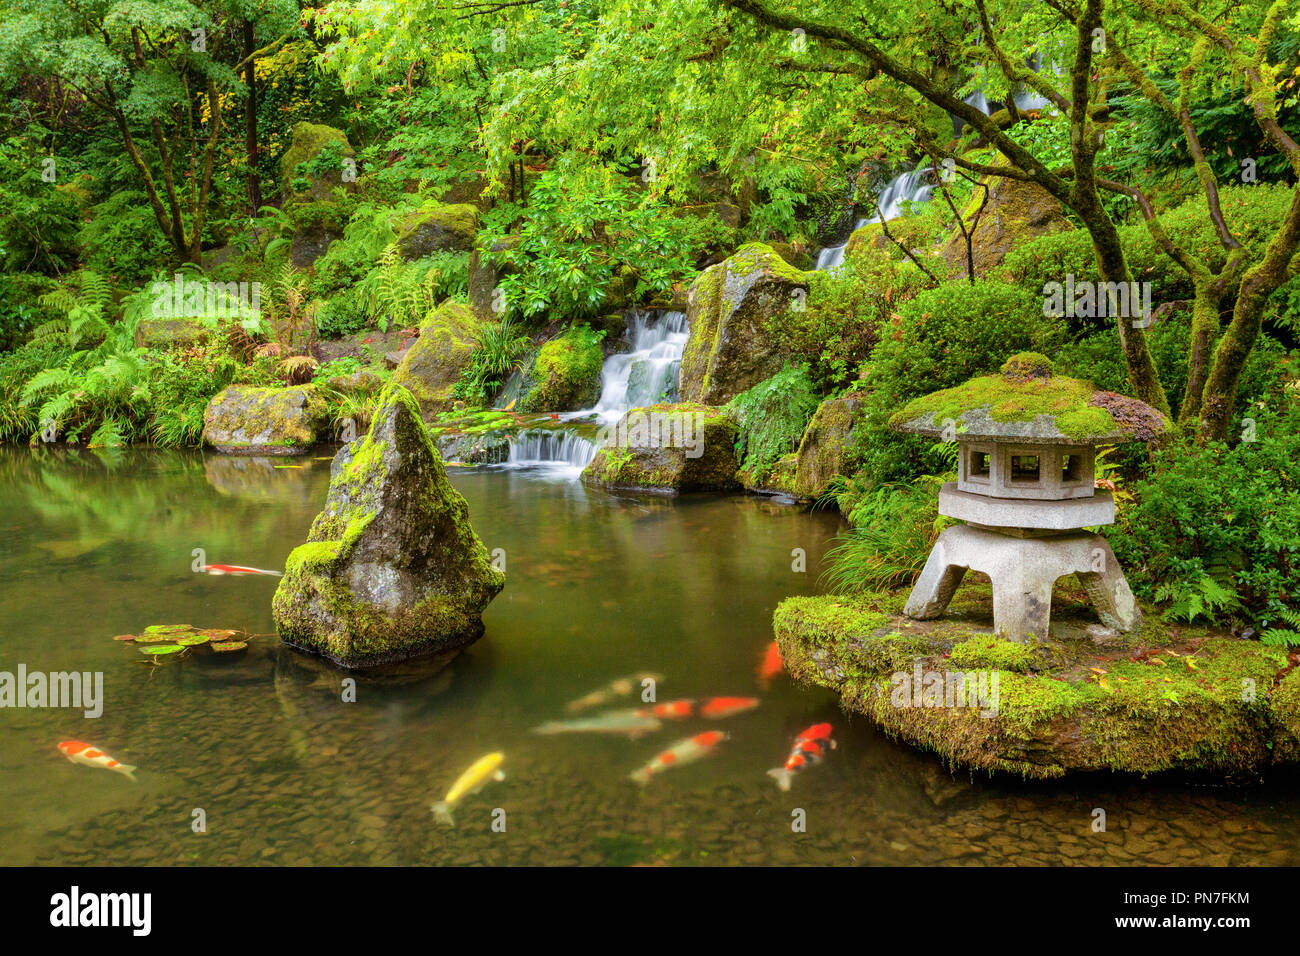 Japanese Garden Stone Pagoda Stock Photos Japanese Garden Stone